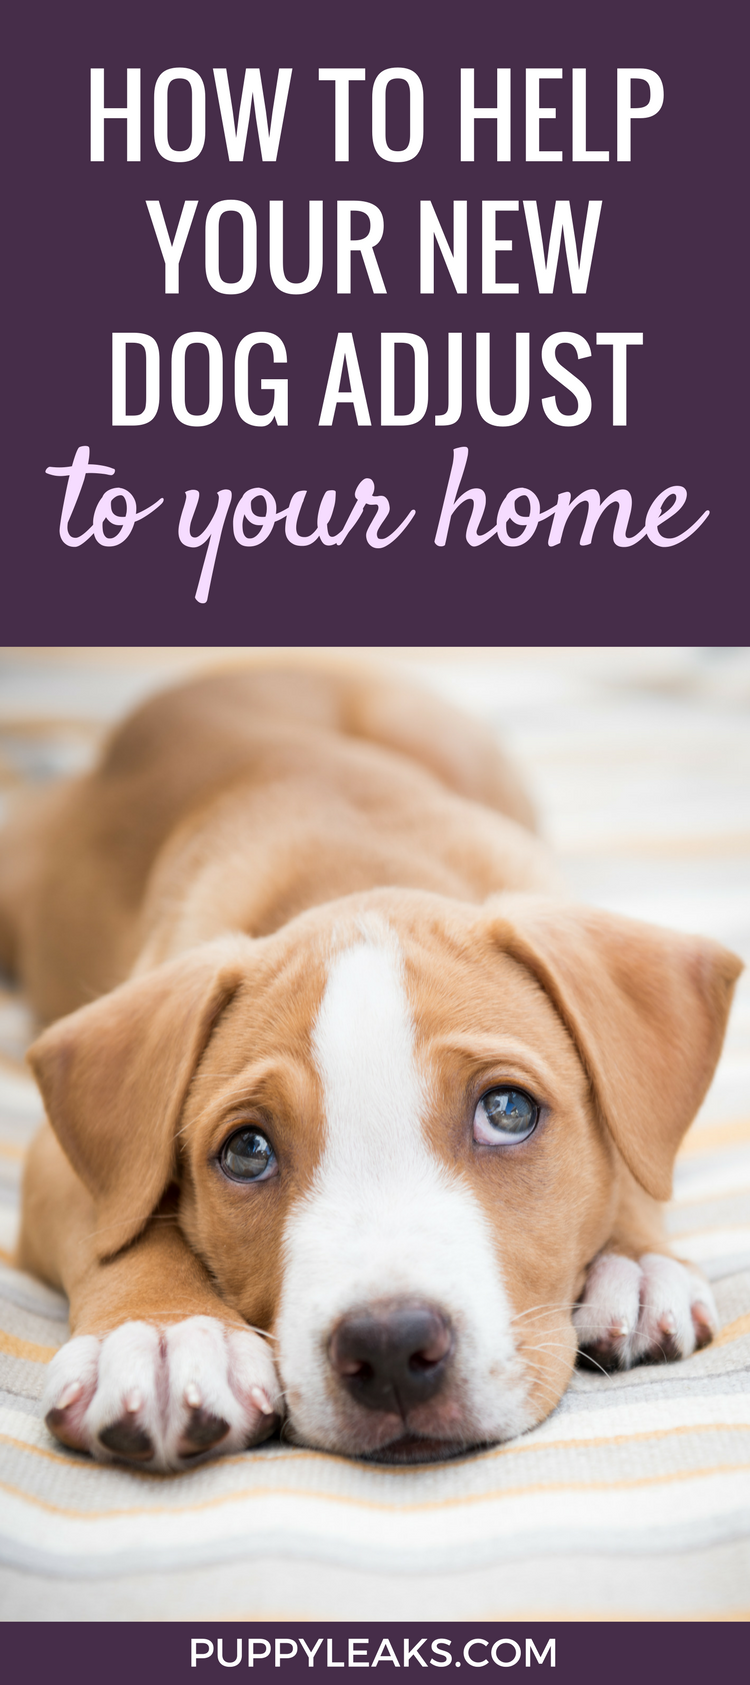 10 советов, которые помогут вашей собаке привыкнуть к вашему дому